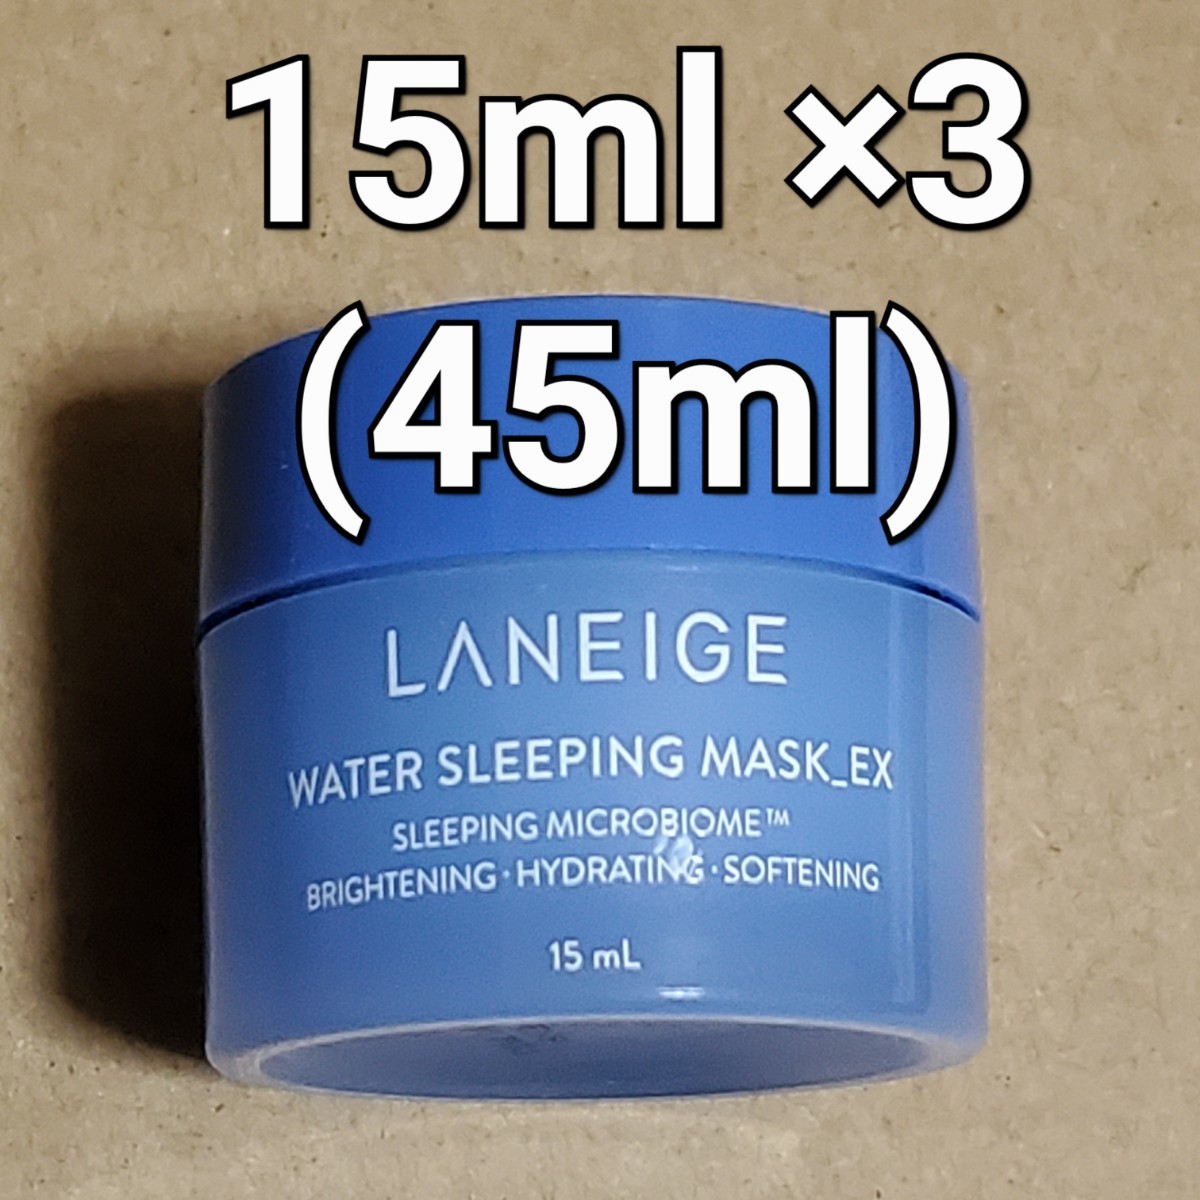 LANEIGE ラネージュ ウォーター スリーピング マスク 15ml ×3 (45ml)_画像1